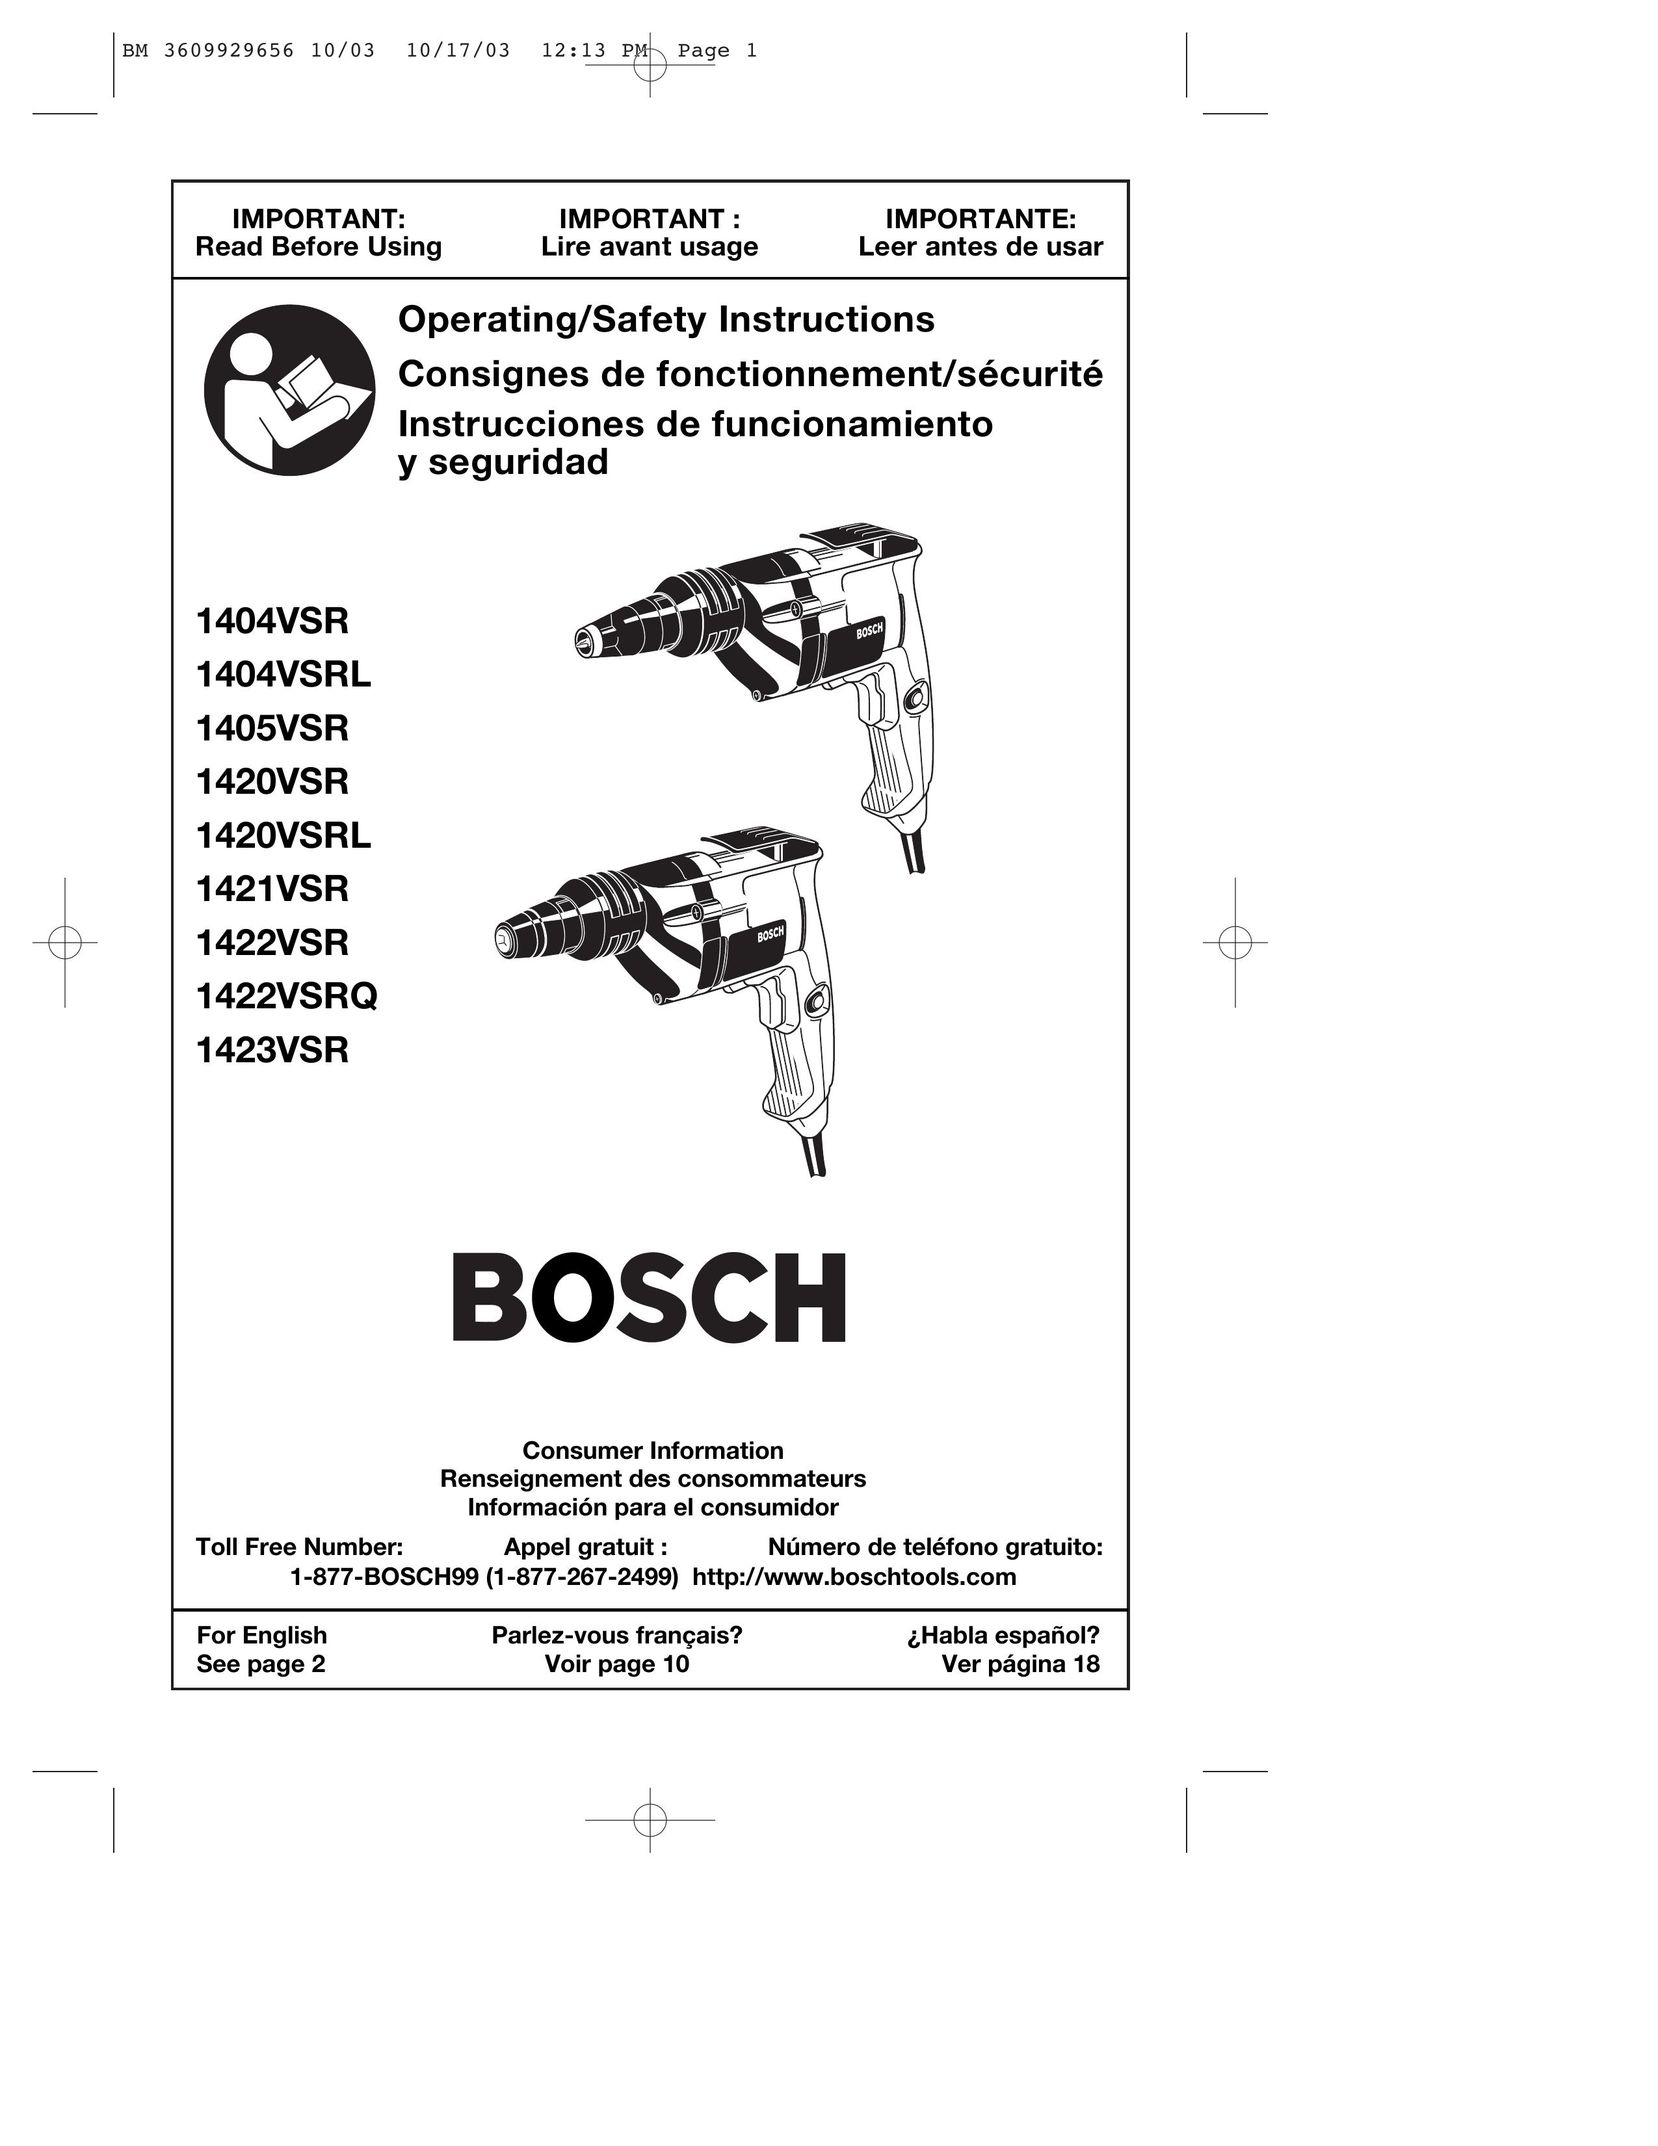 Bosch Power Tools 1423VSR Drill User Manual